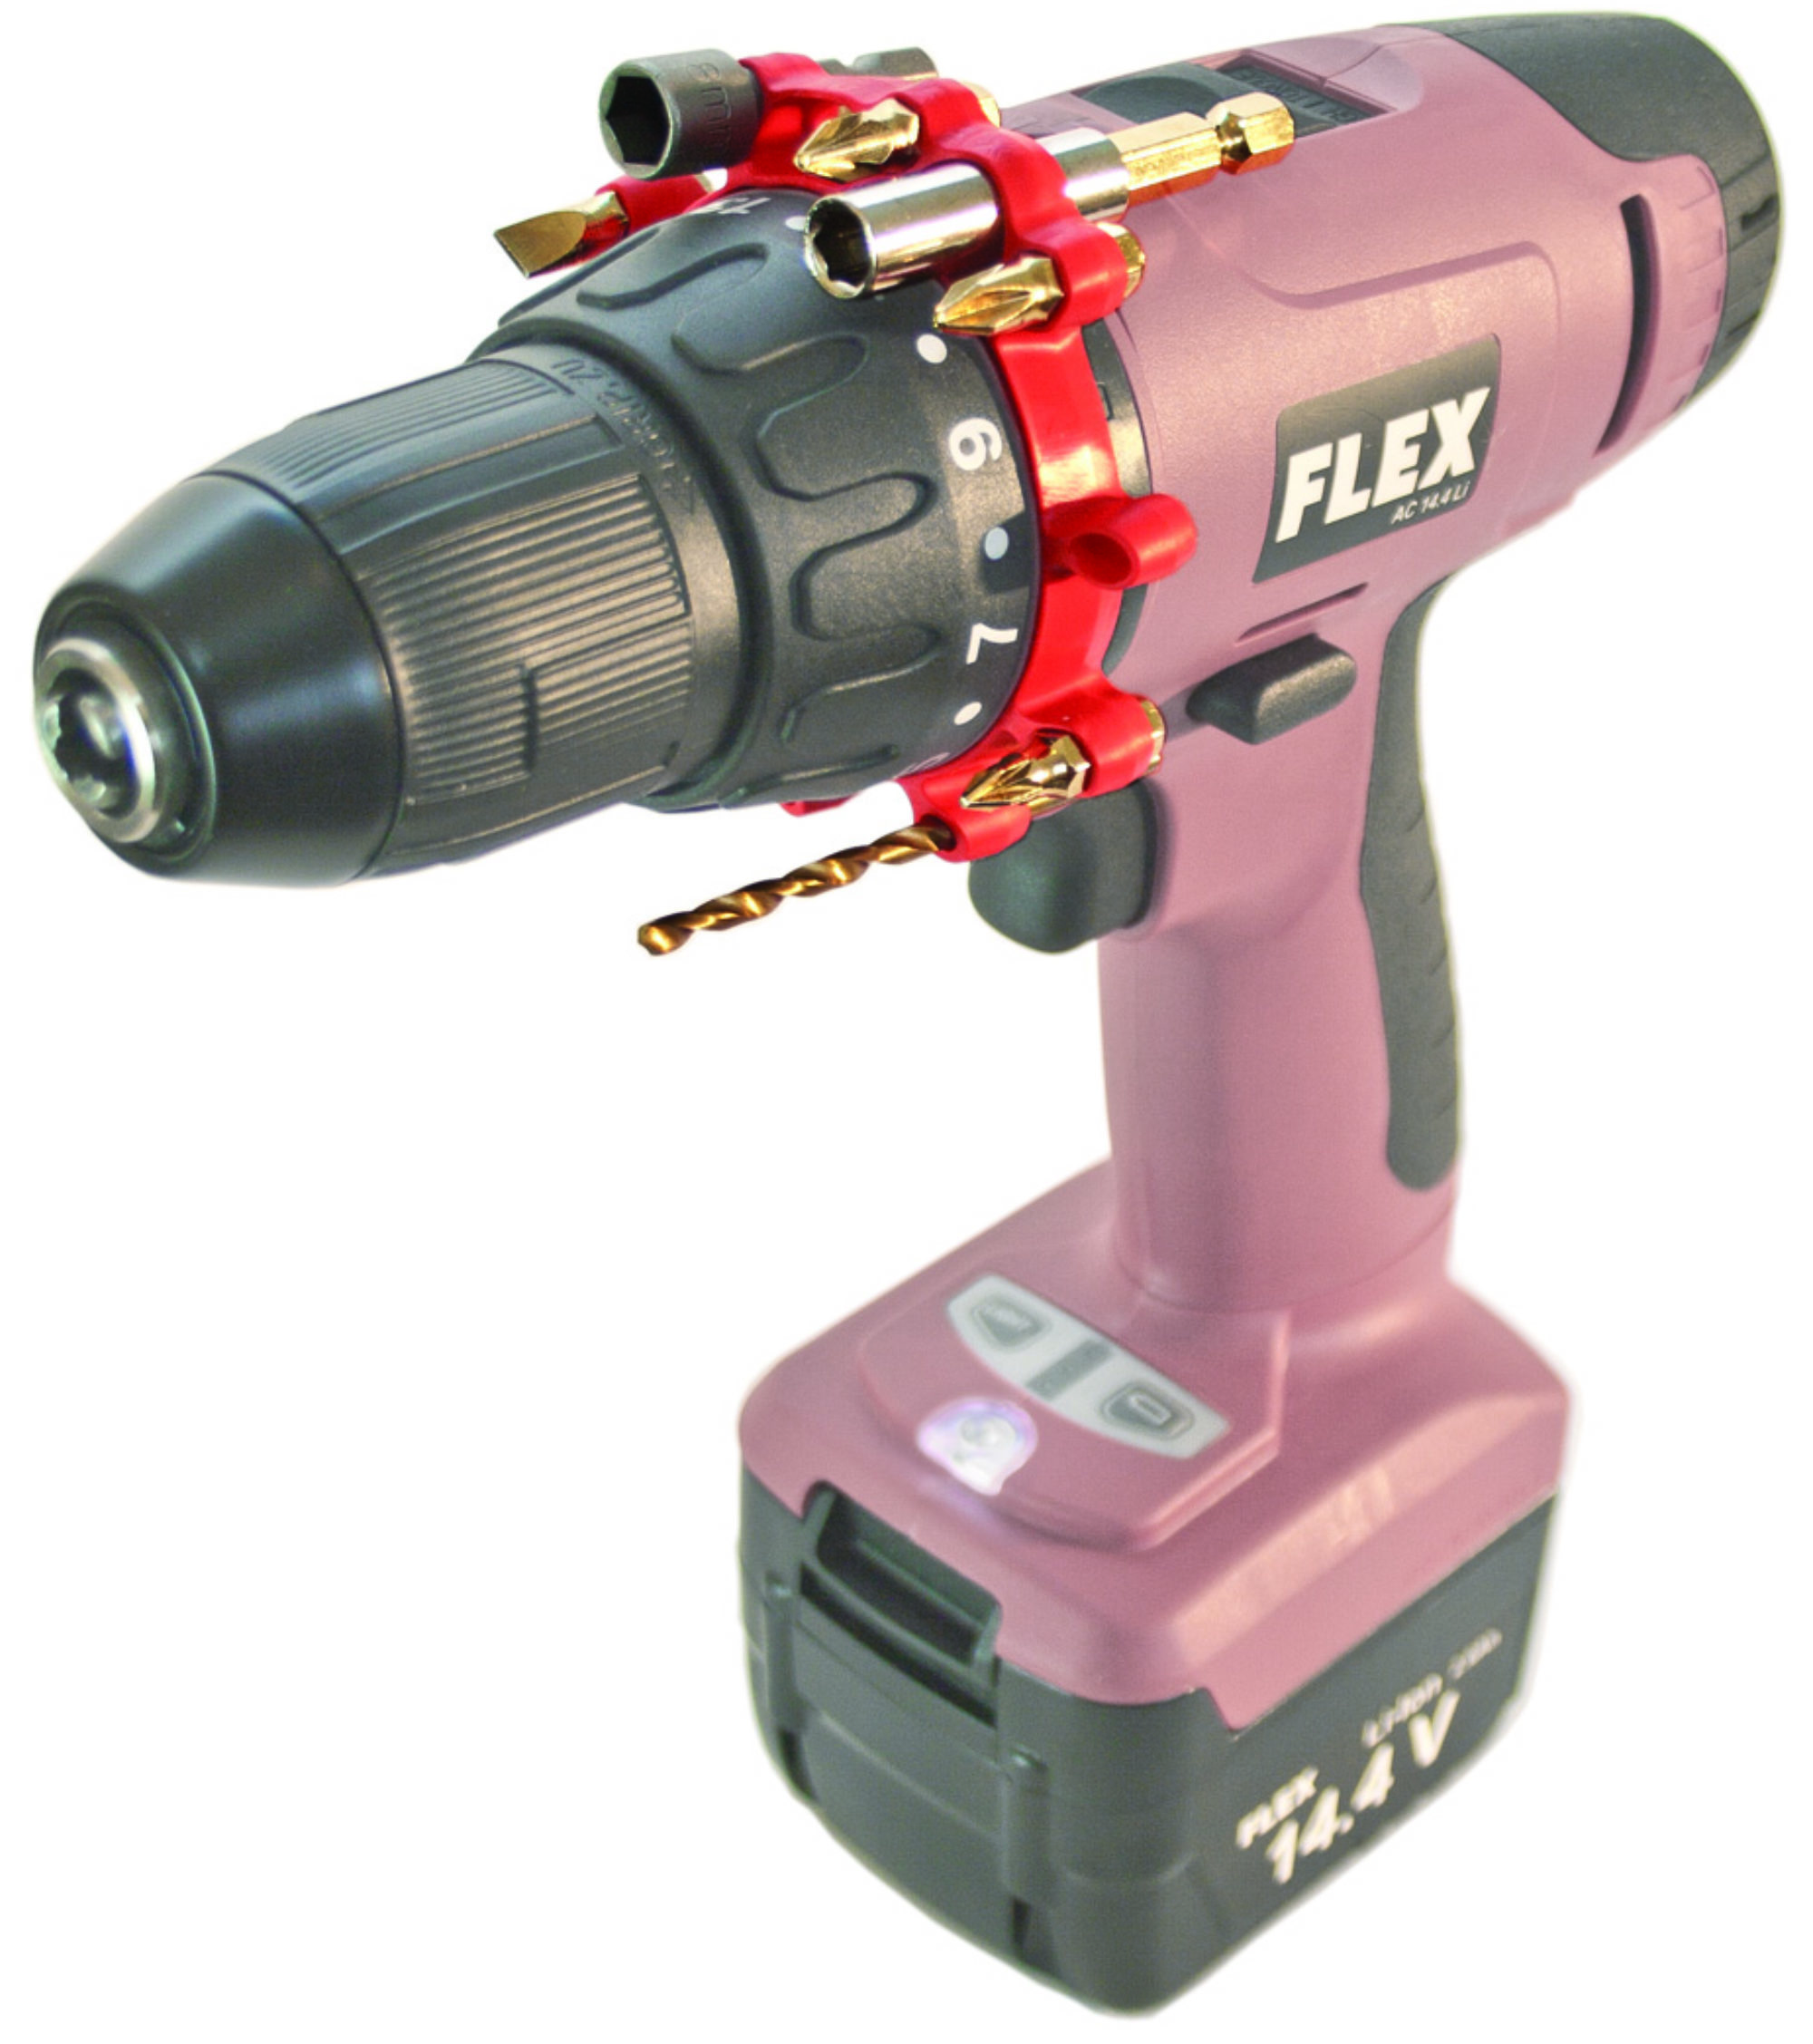 Gearfix - Drill bit holder